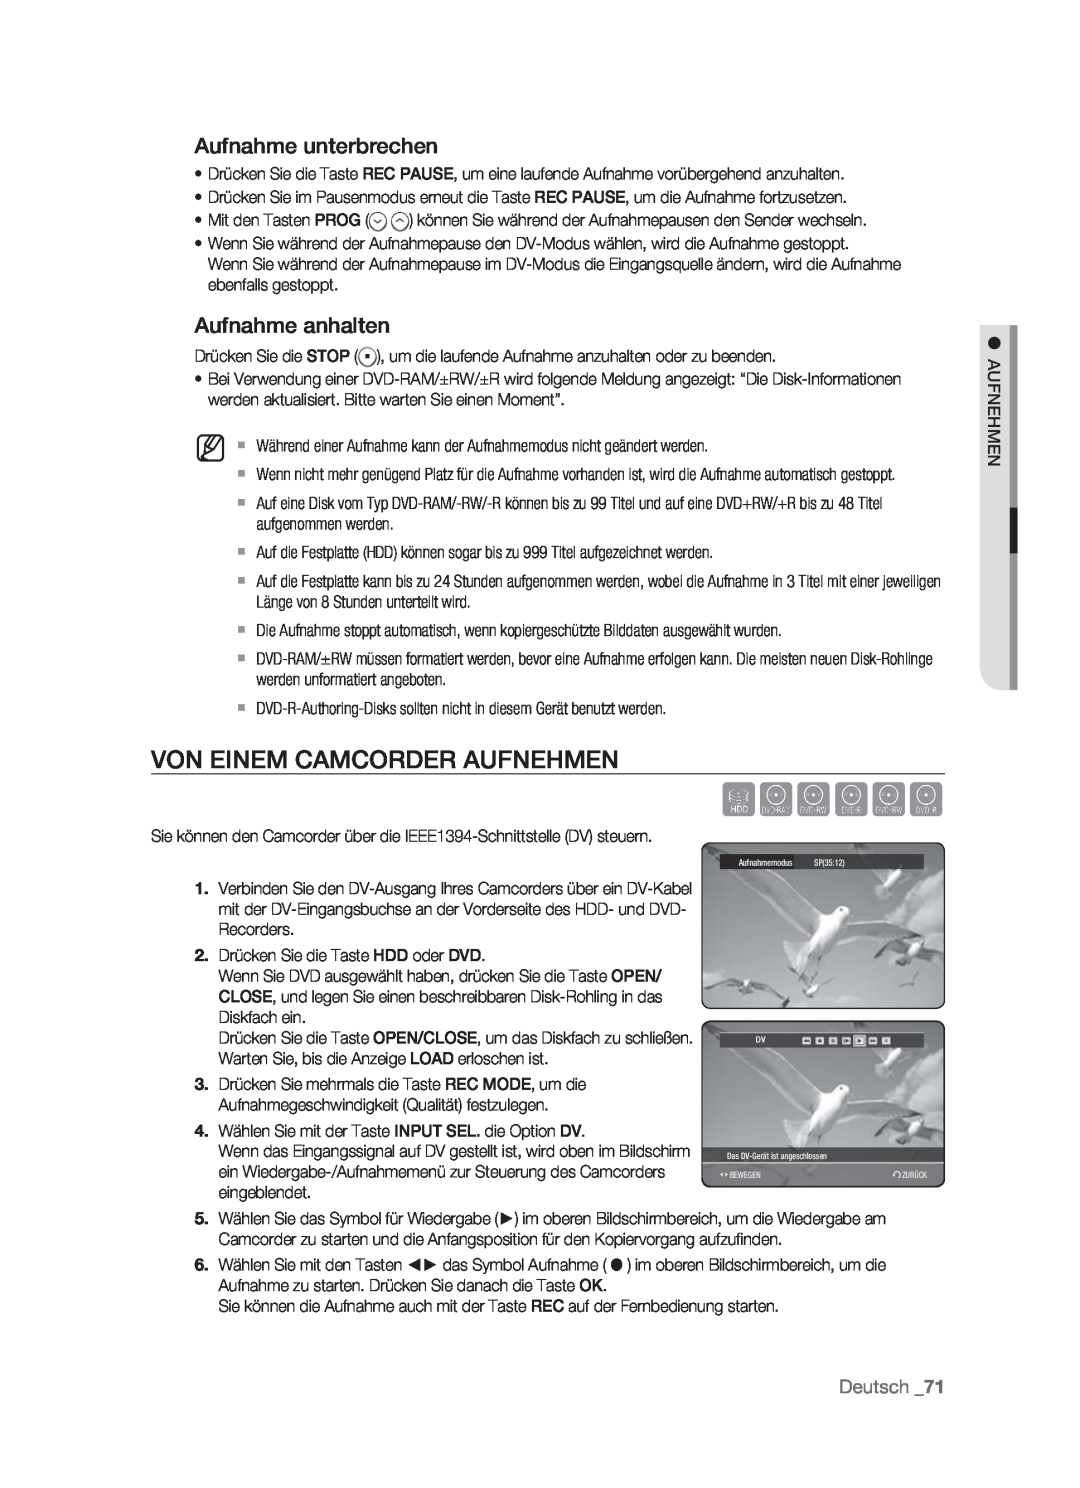 Samsung DVD-HR773/AUS manual Von Einem Camcorder Aufnehmen, Aufnahme unterbrechen, Aufnahme anhalten, Sxcvkl, Deutsch 